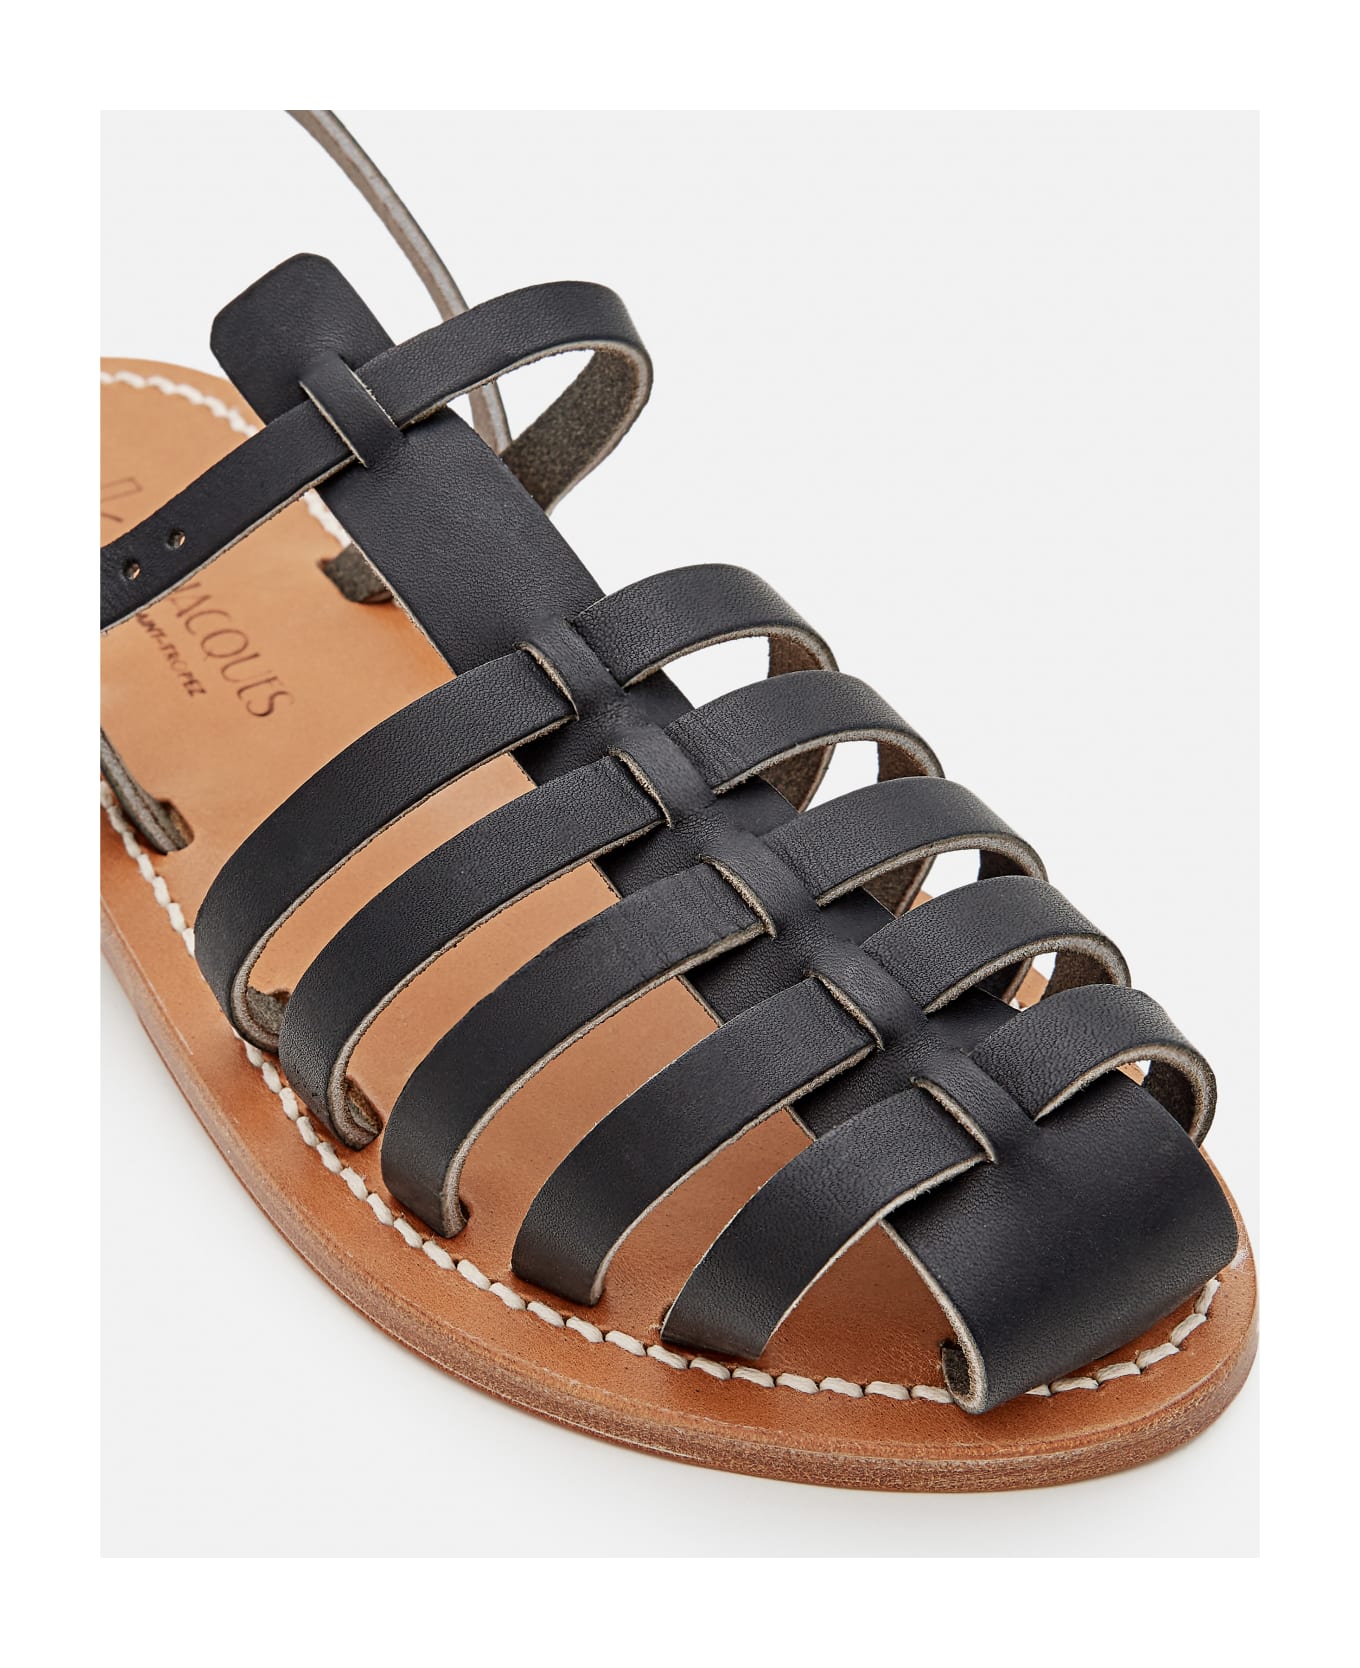 K.Jacques Adrien Leather Sandals - Black